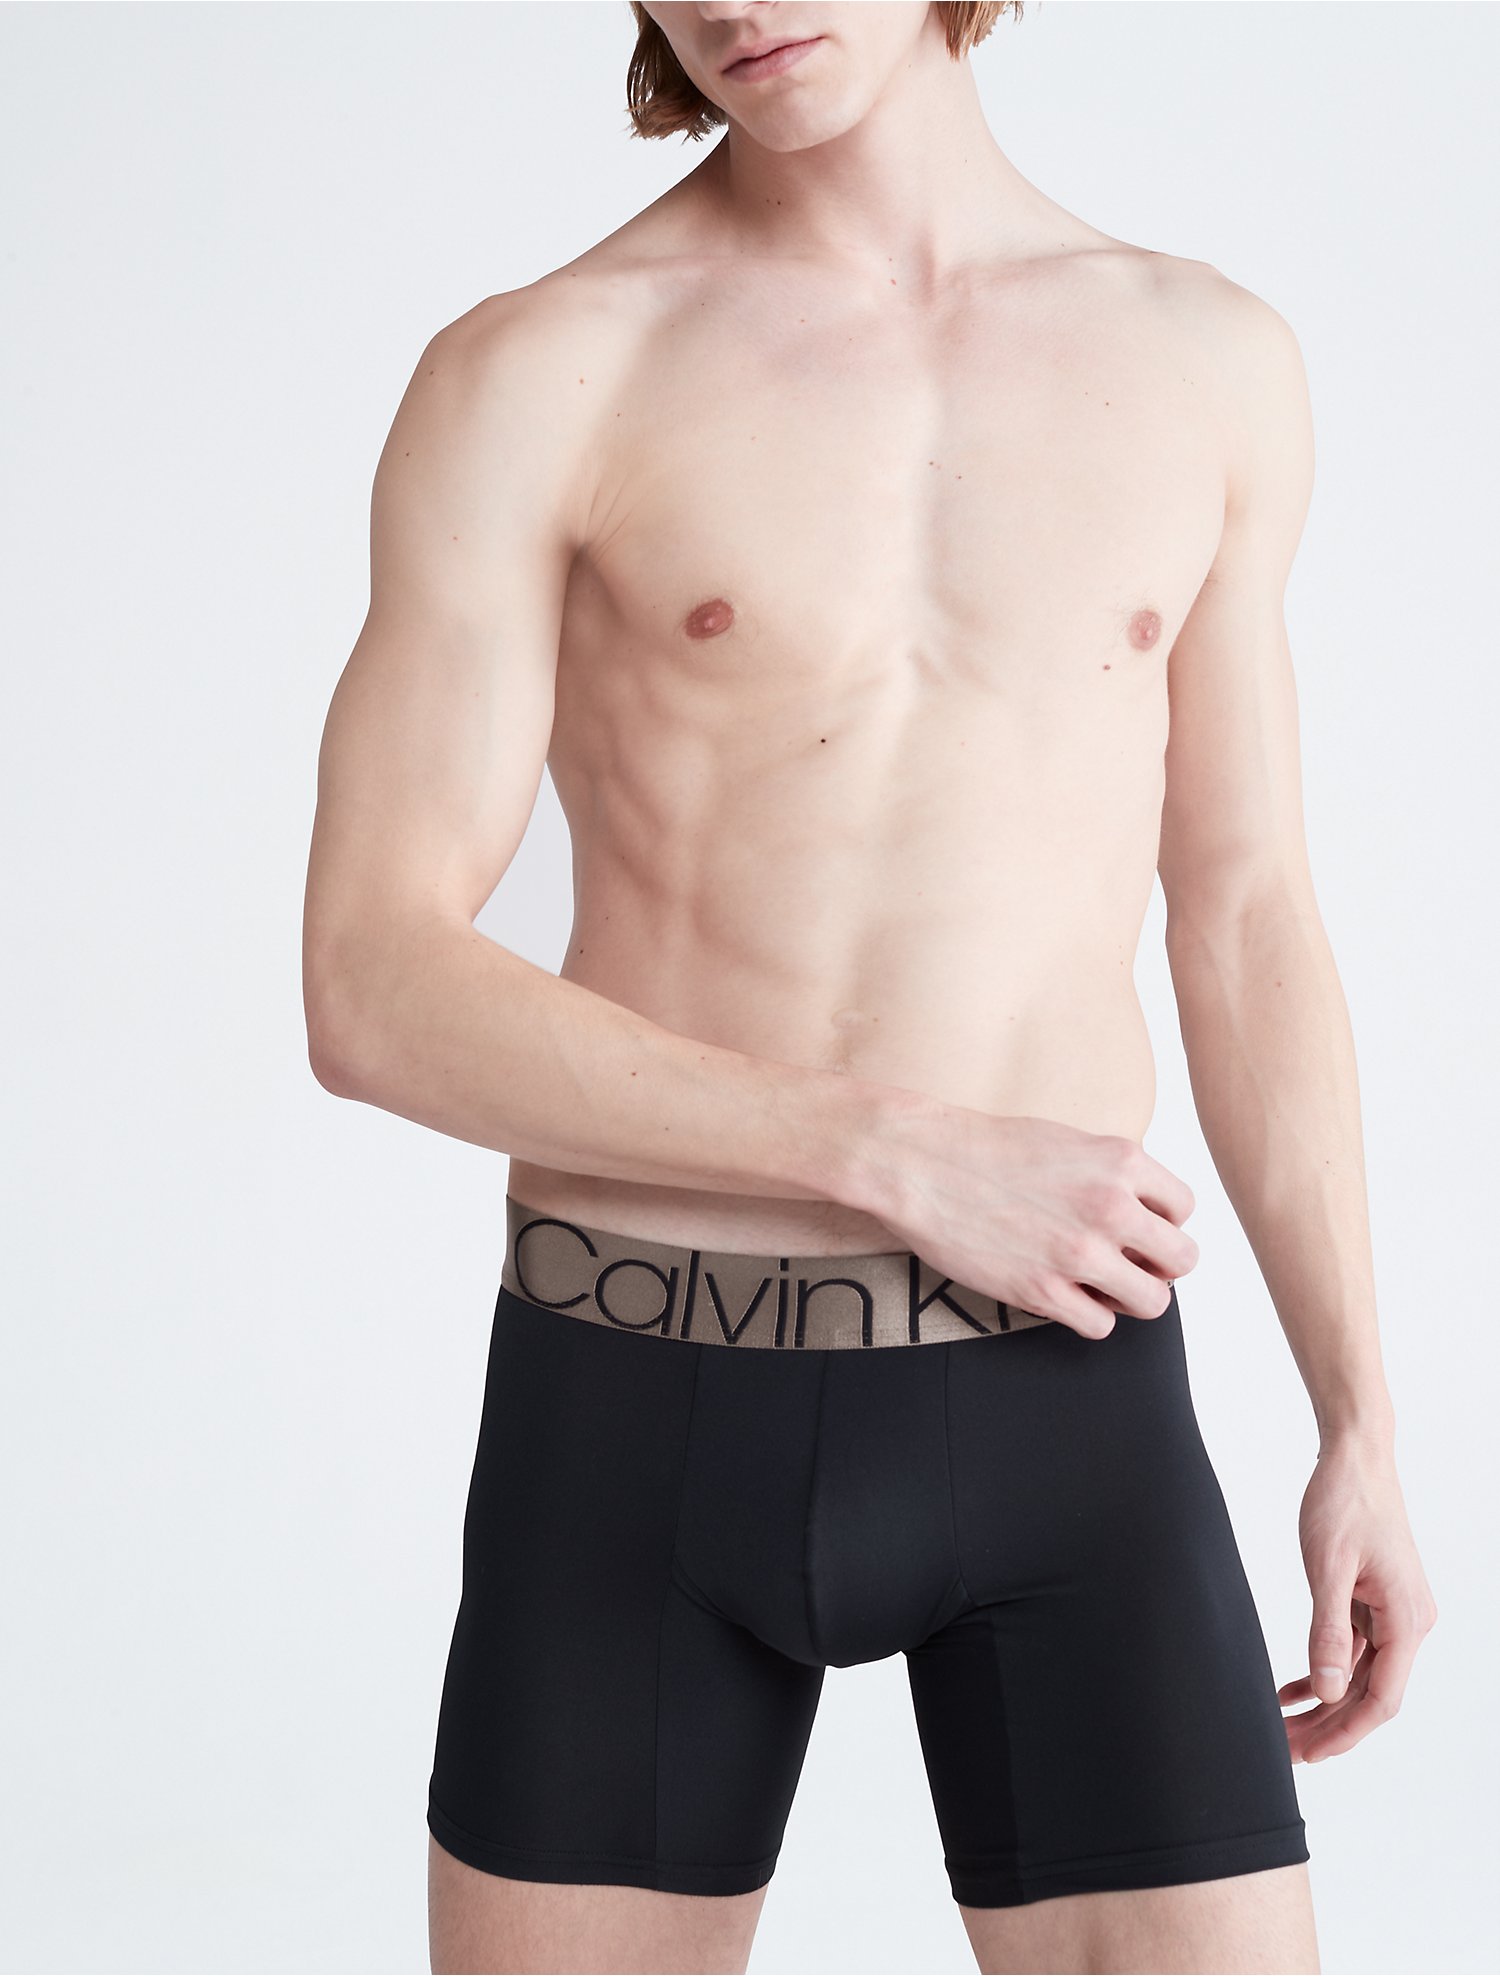 Save 9% Reebok Low Rise Underwear Briefs for Men Mens Clothing Underwear Boxers briefs 